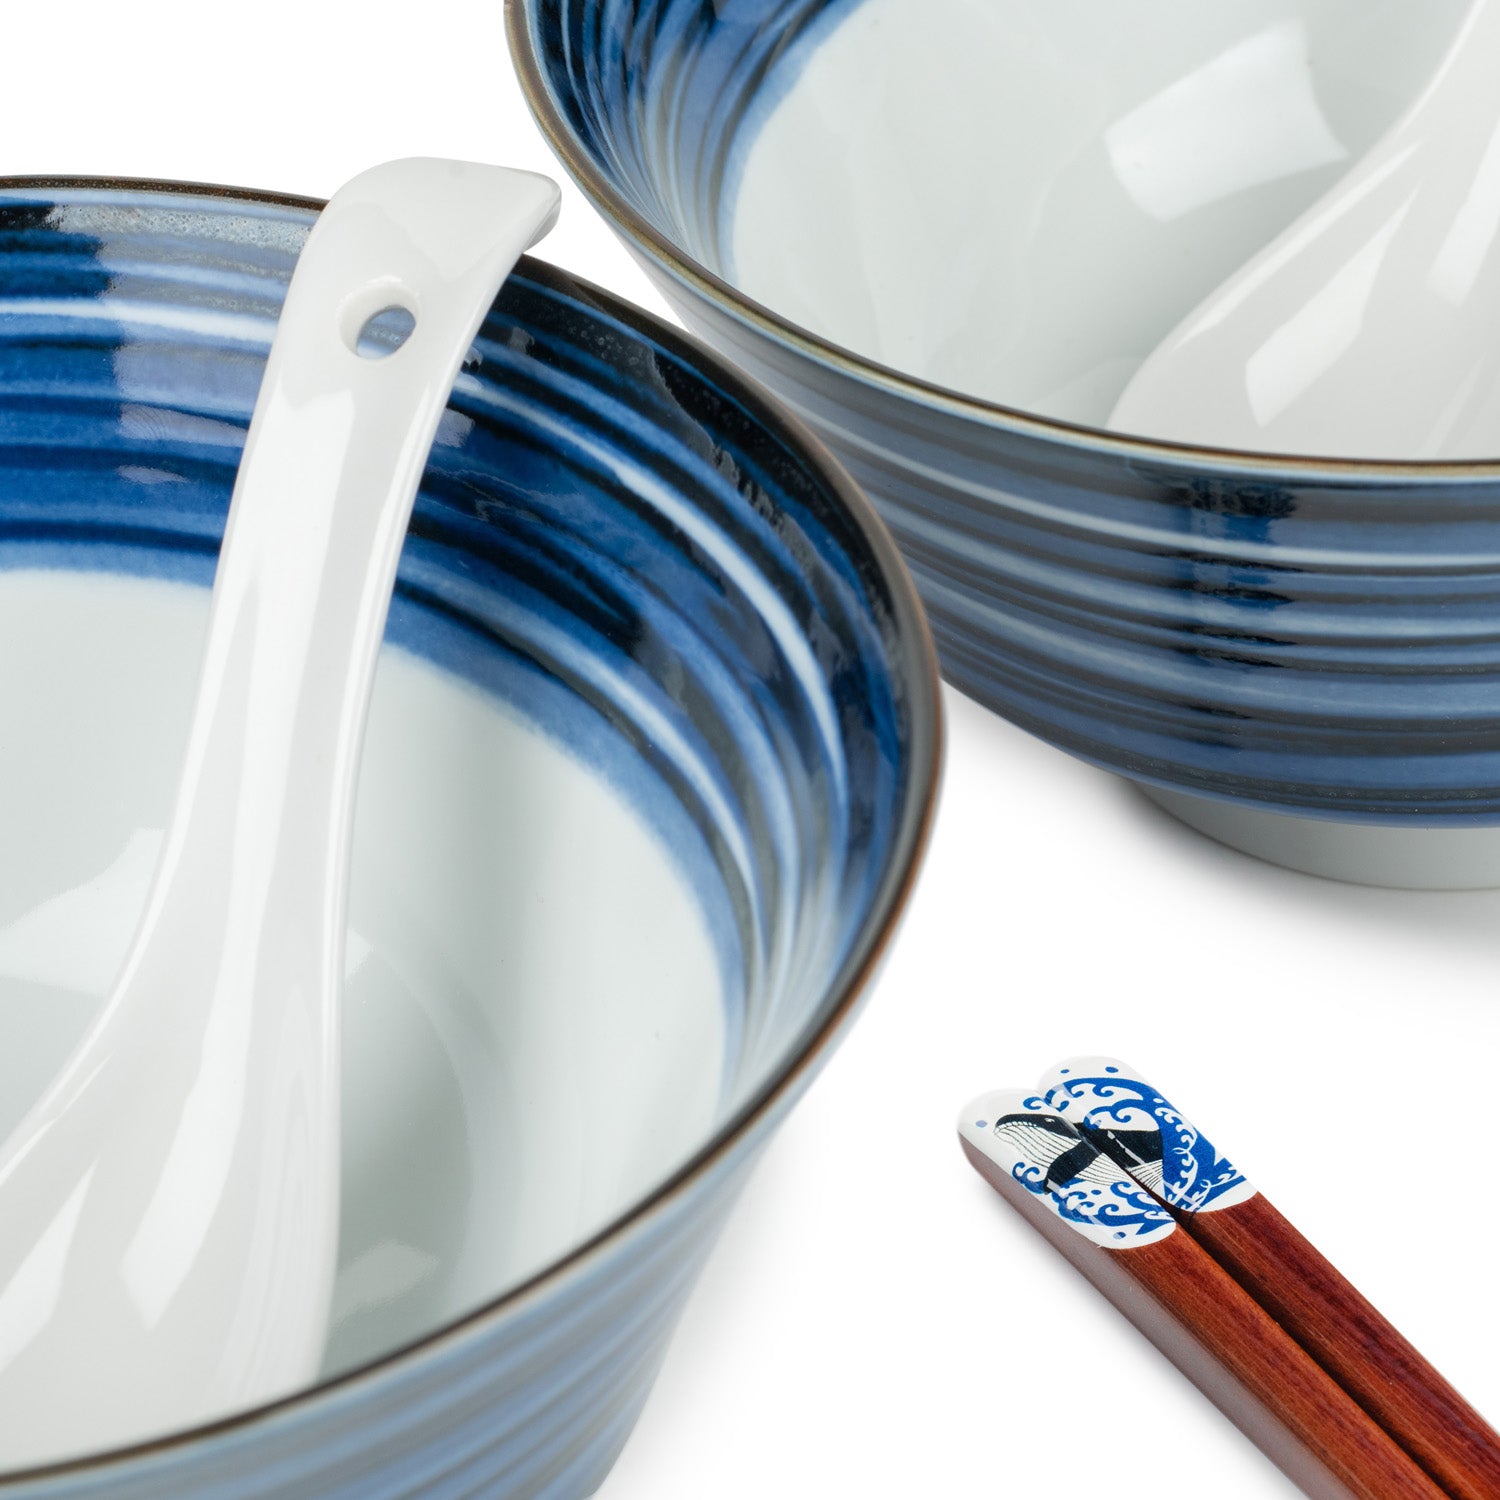 Indigo Blue Line Japanese Ramen Bowl Gift Set detail